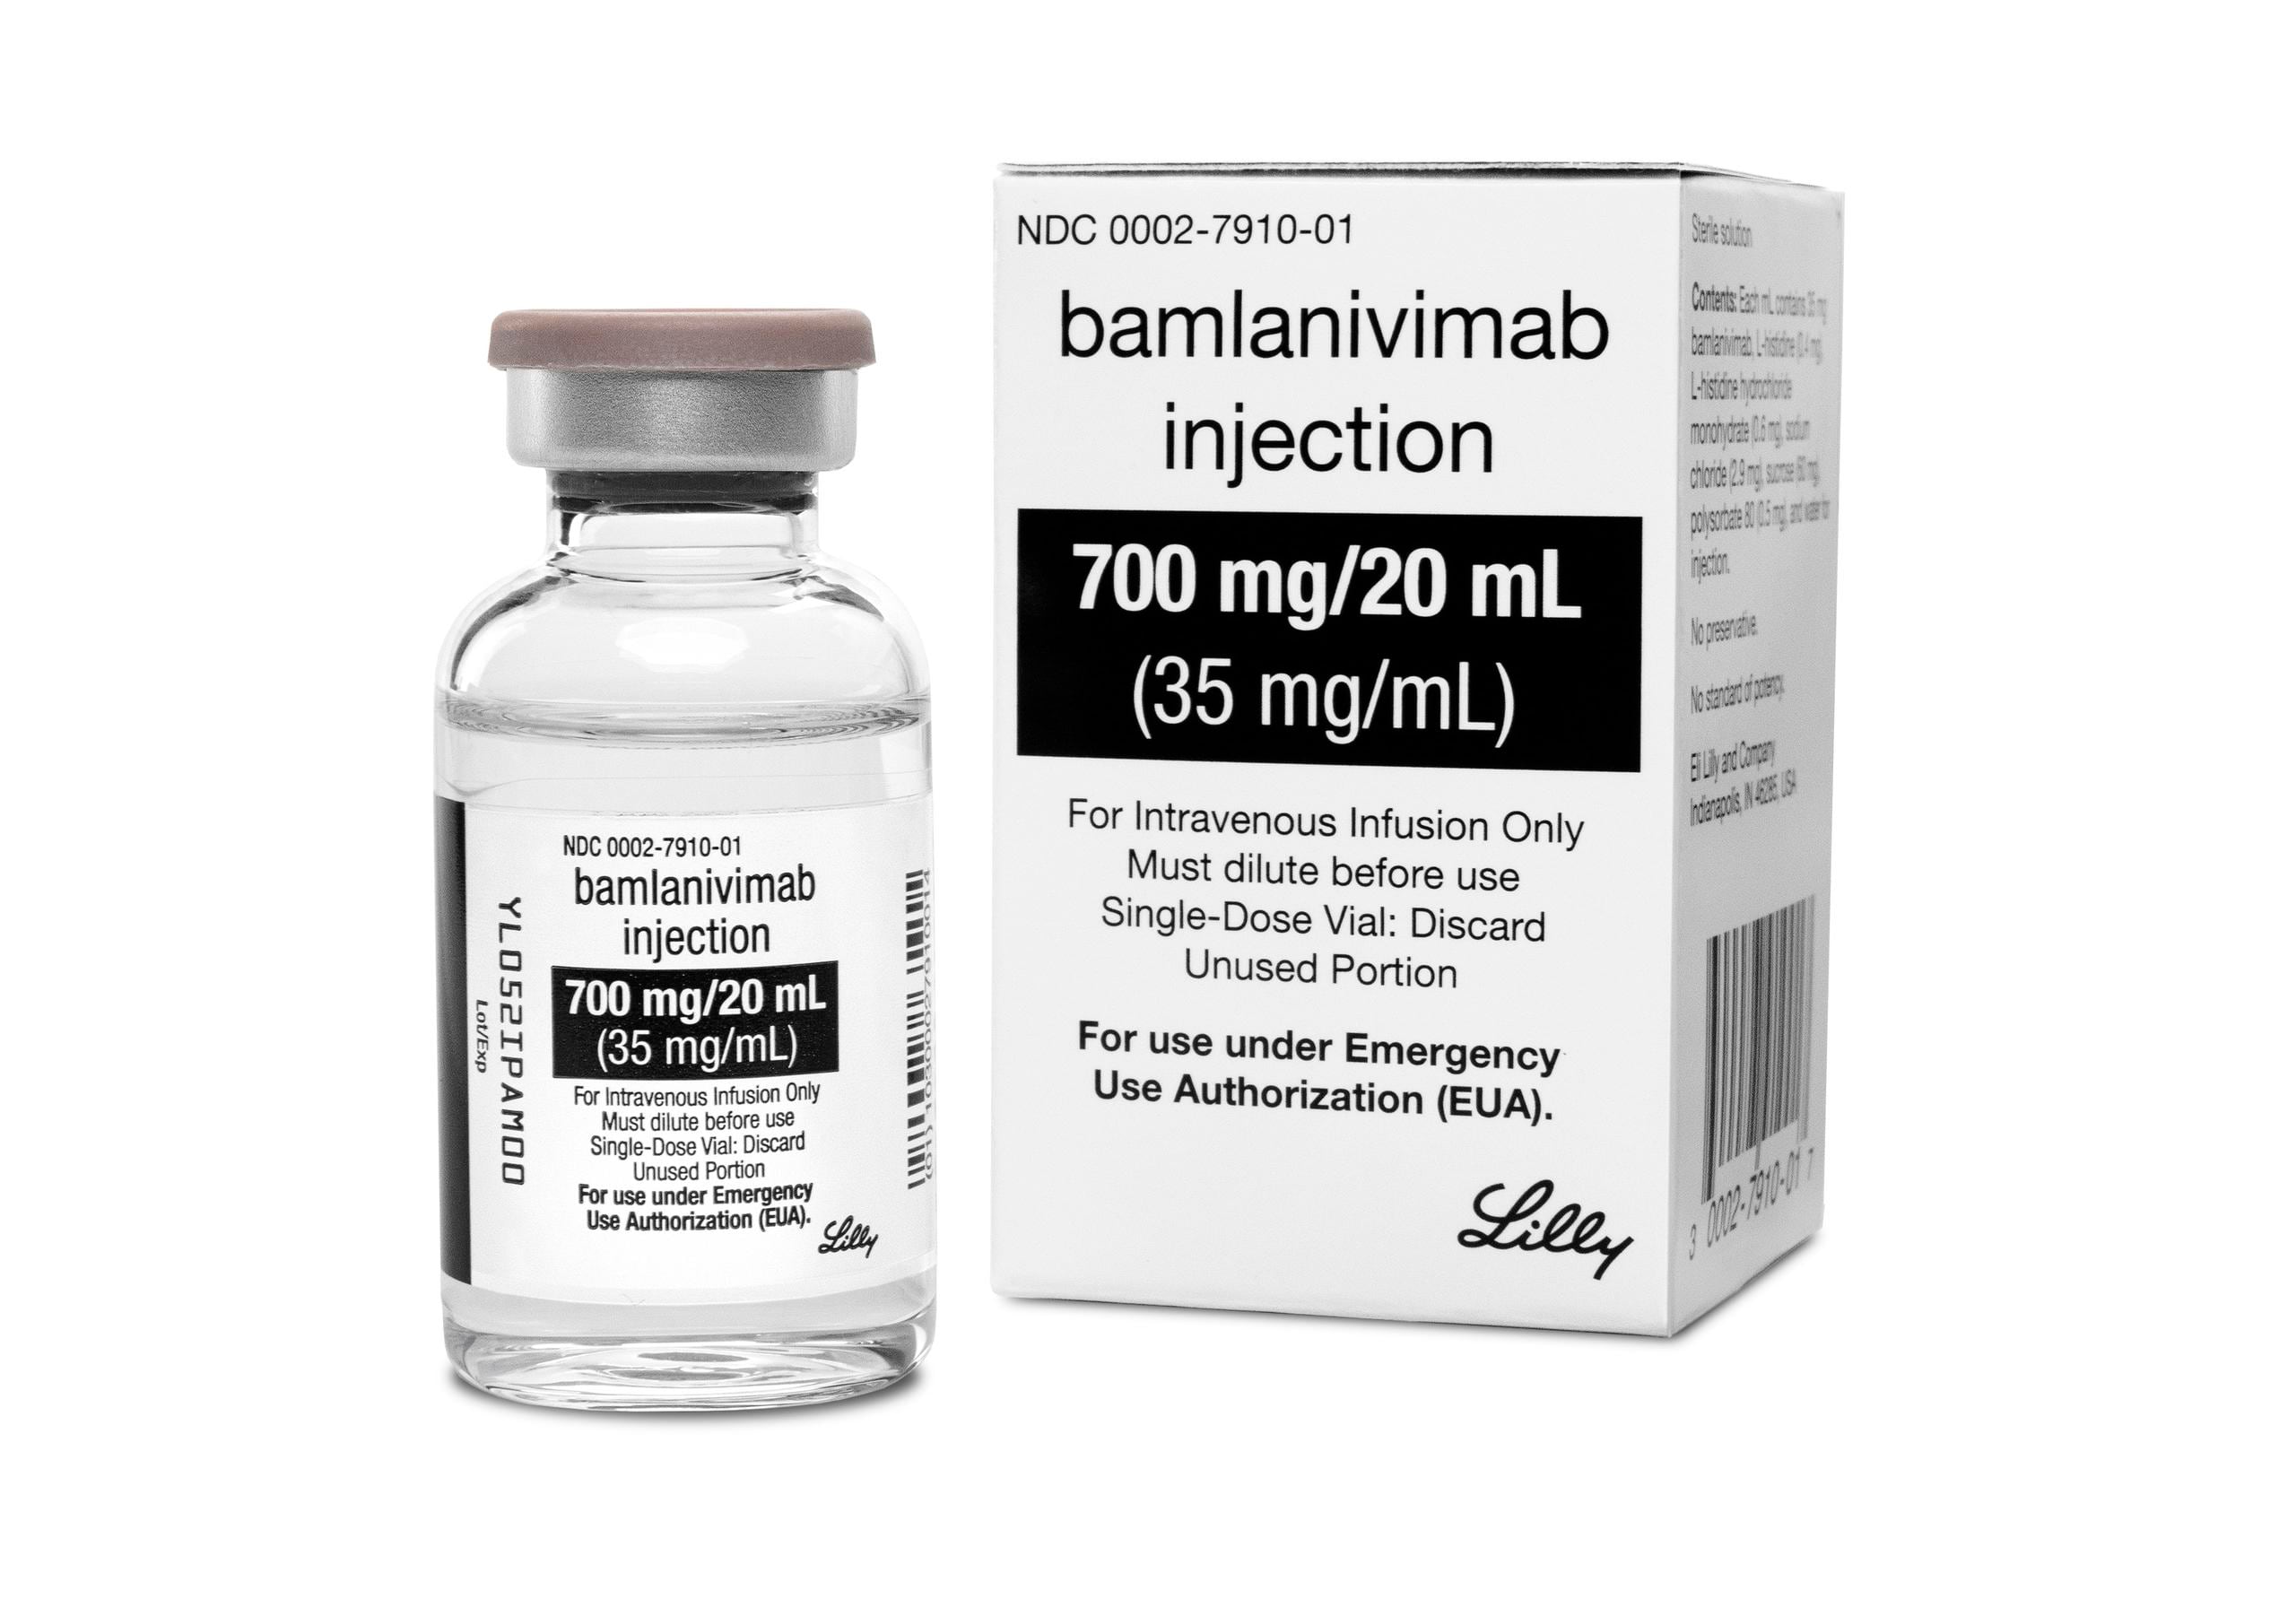 El Bamlanivimab ha demostrado beneficios en personas mayores de 65 años y con patologías crónicas, los grupos más afectados.